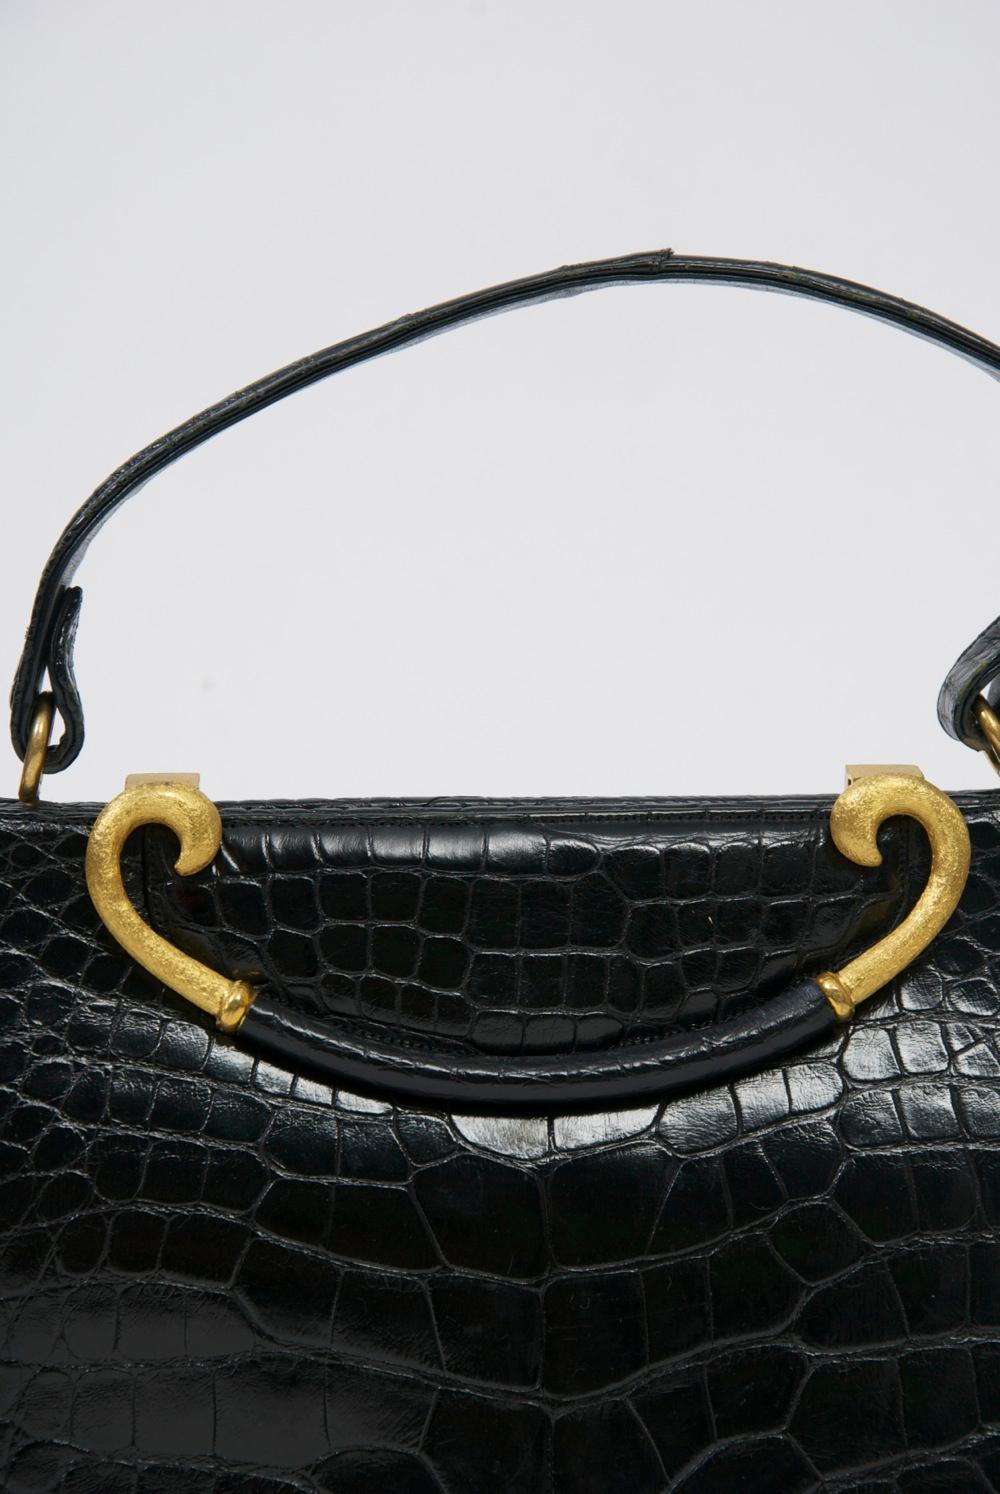 Klassische 1960er-Jahre-Handtasche von Rosenfeld aus schwarzem Leder mit Alligatorprägung, deren herausragendes Merkmal der geschwungene Verschluss aus gebürstetem, goldfarbenem Metall mit Ledermitte ist, der sich zum Öffnen der Tasche anheben